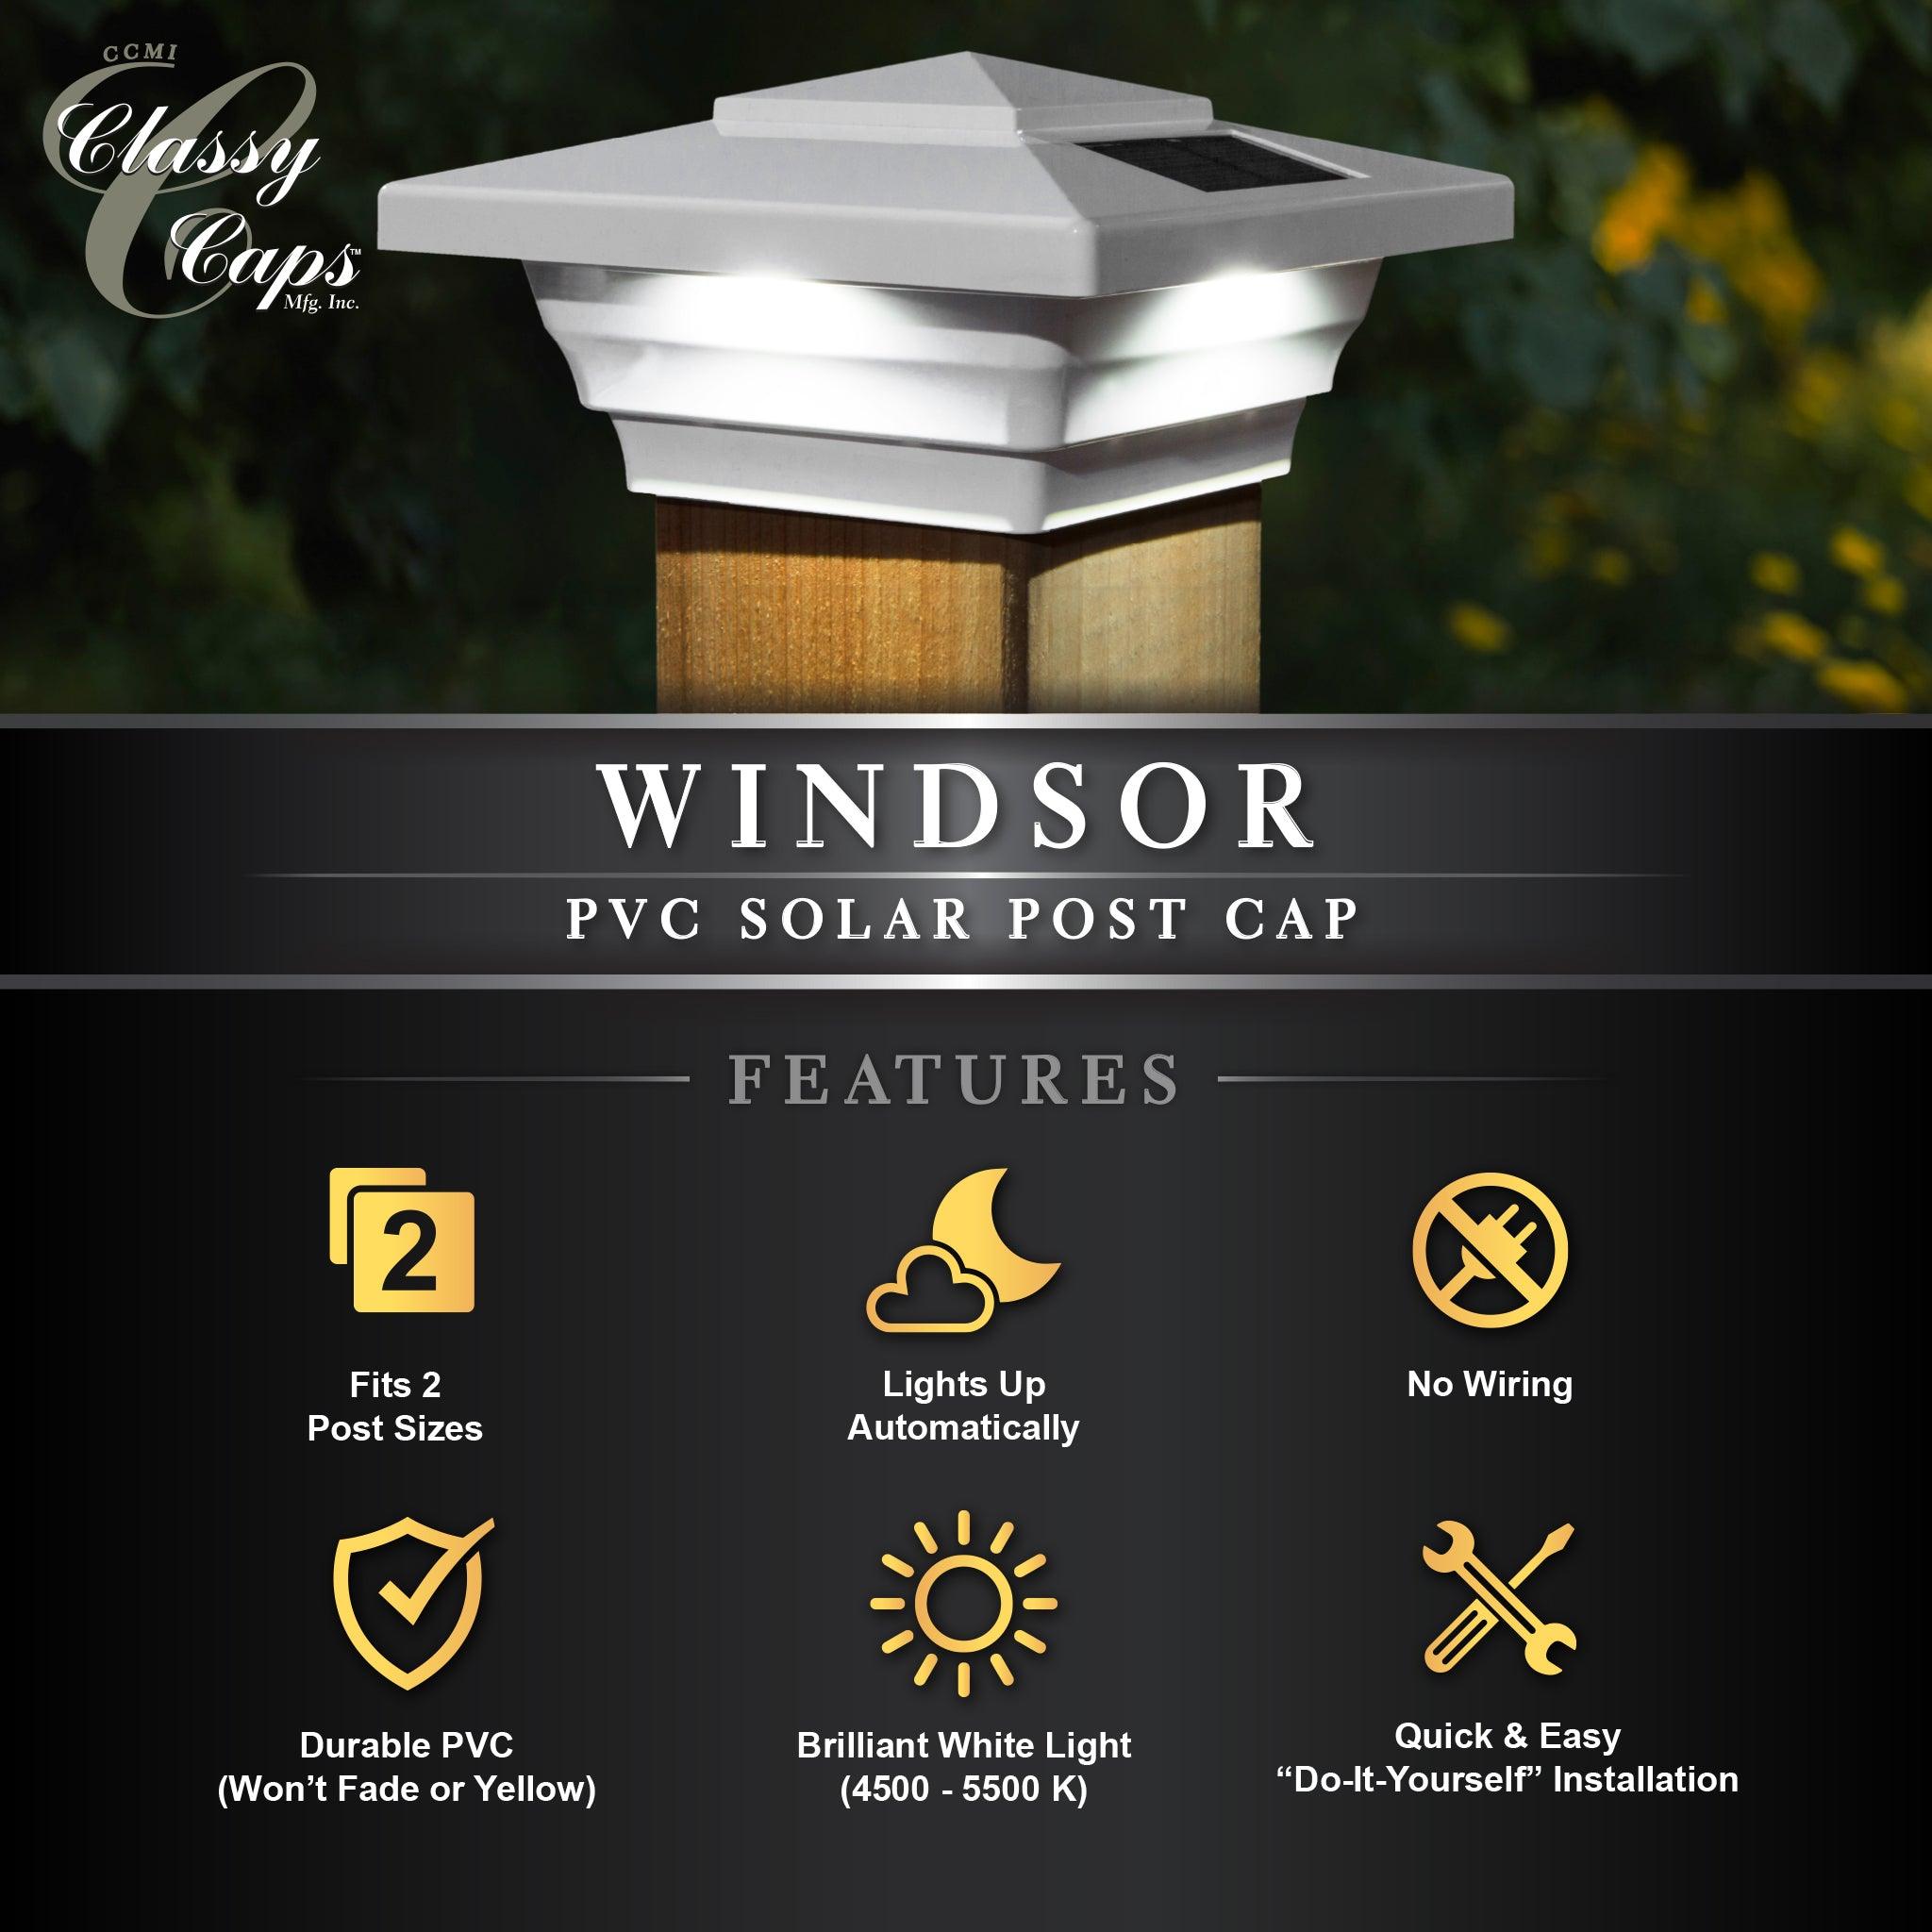 Windsor Solar Post Cap - White - Classy Caps Mfg. Inc.